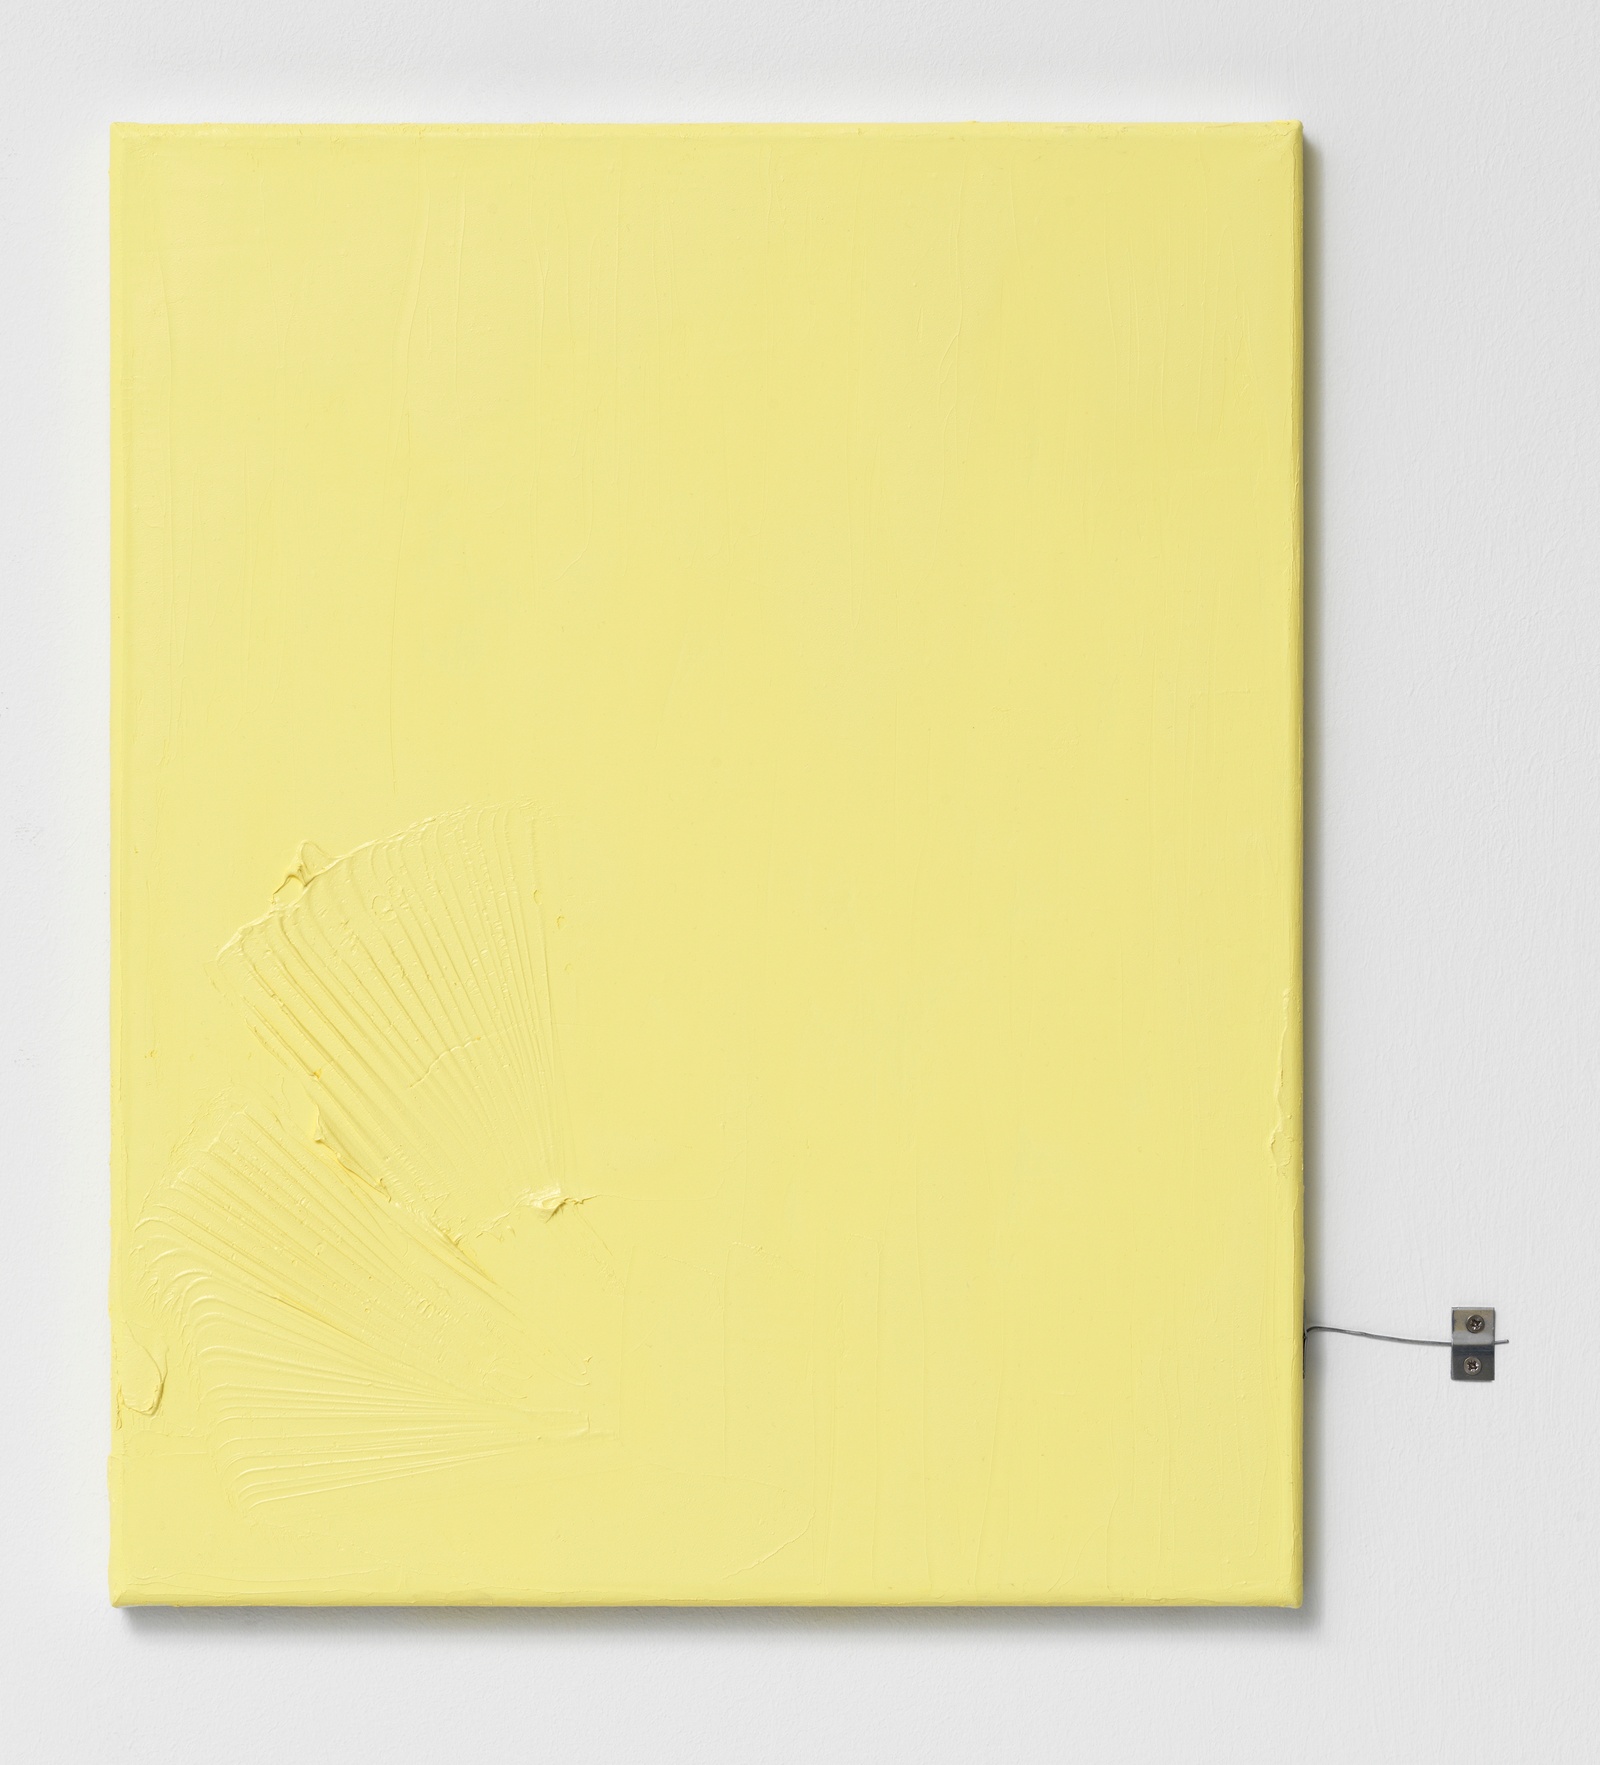 Untitled, 2018. oil on canvas, aluminium, screws. 51 x 45 cm